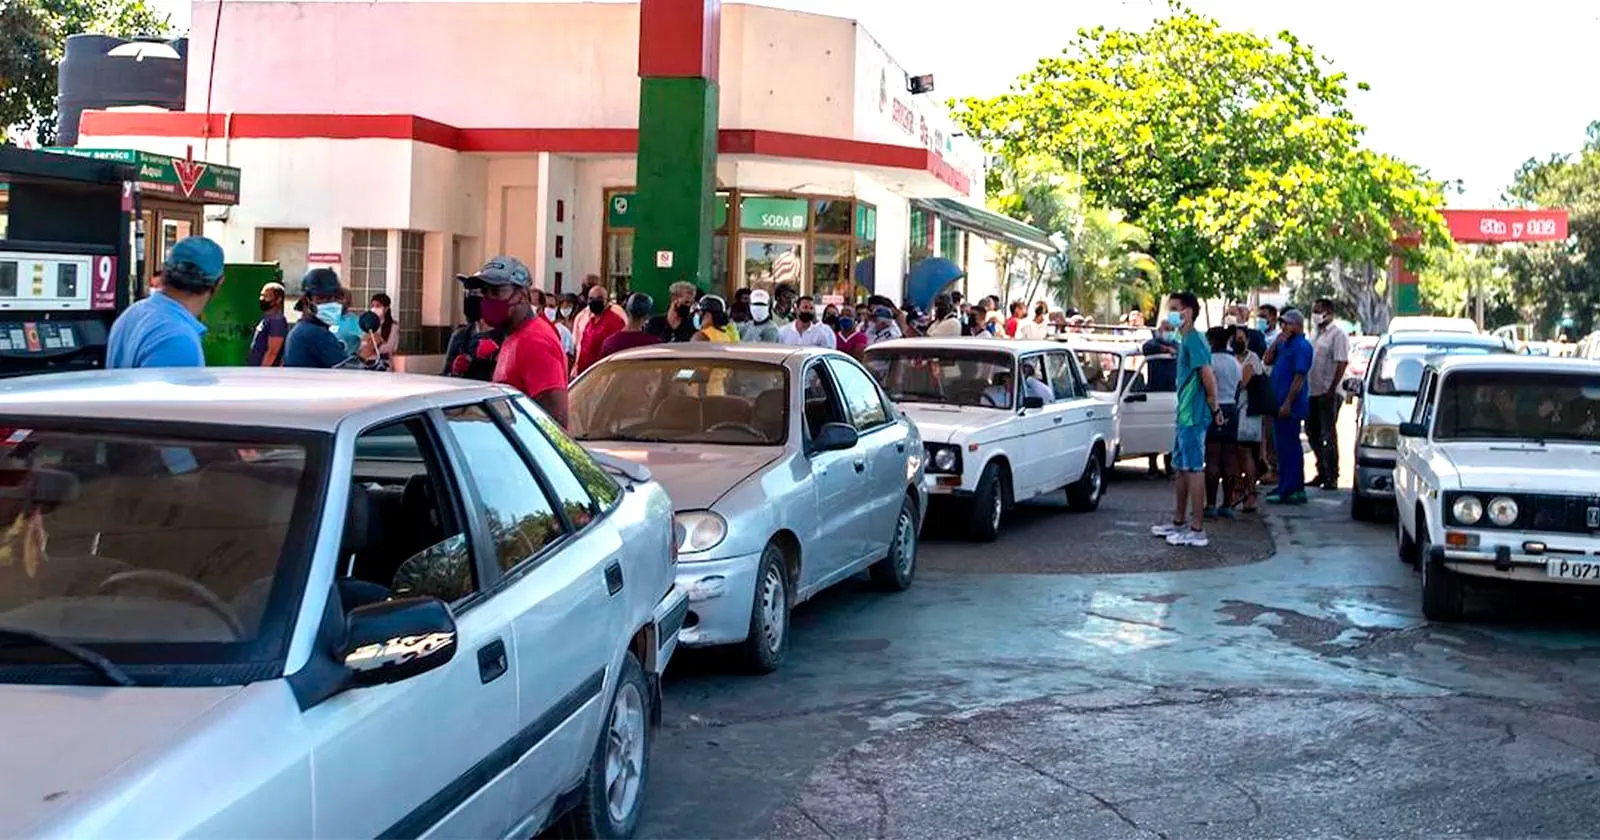 Dinero al Bolsillo: Cómo Sacarle Ganancia a las Gasolineras en la Habana